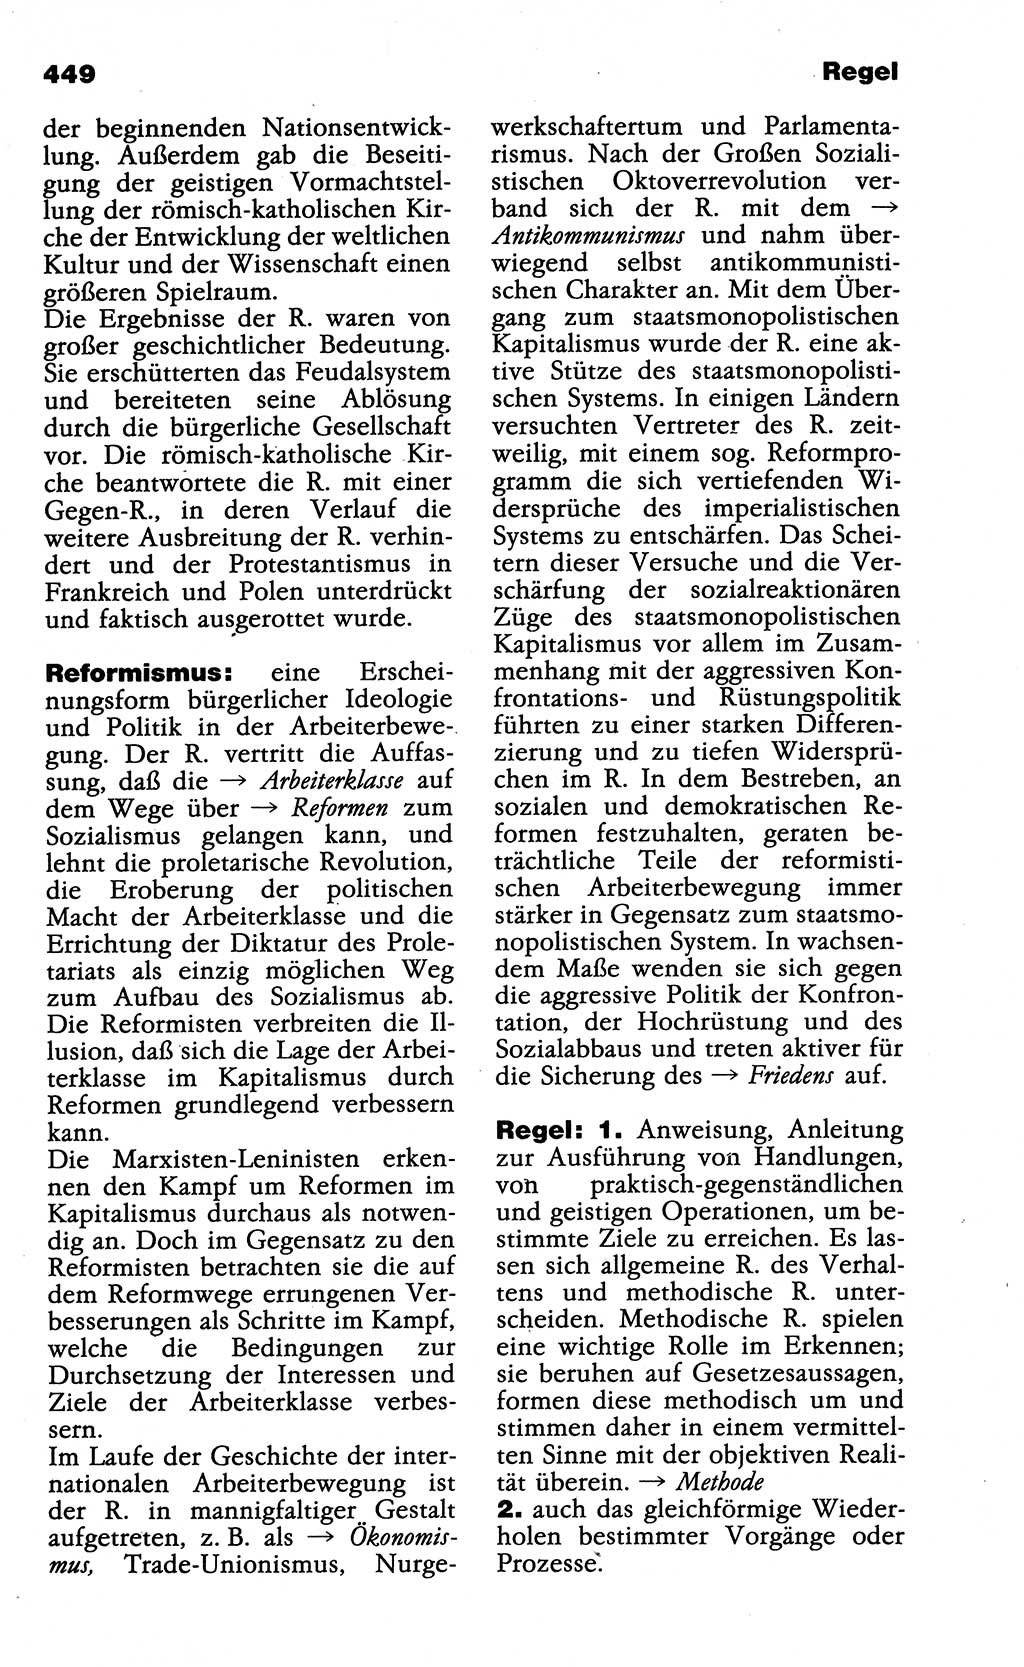 Wörterbuch der marxistisch-leninistischen Philosophie [Deutsche Demokratische Republik (DDR)] 1985, Seite 449 (Wb. ML Phil. DDR 1985, S. 449)